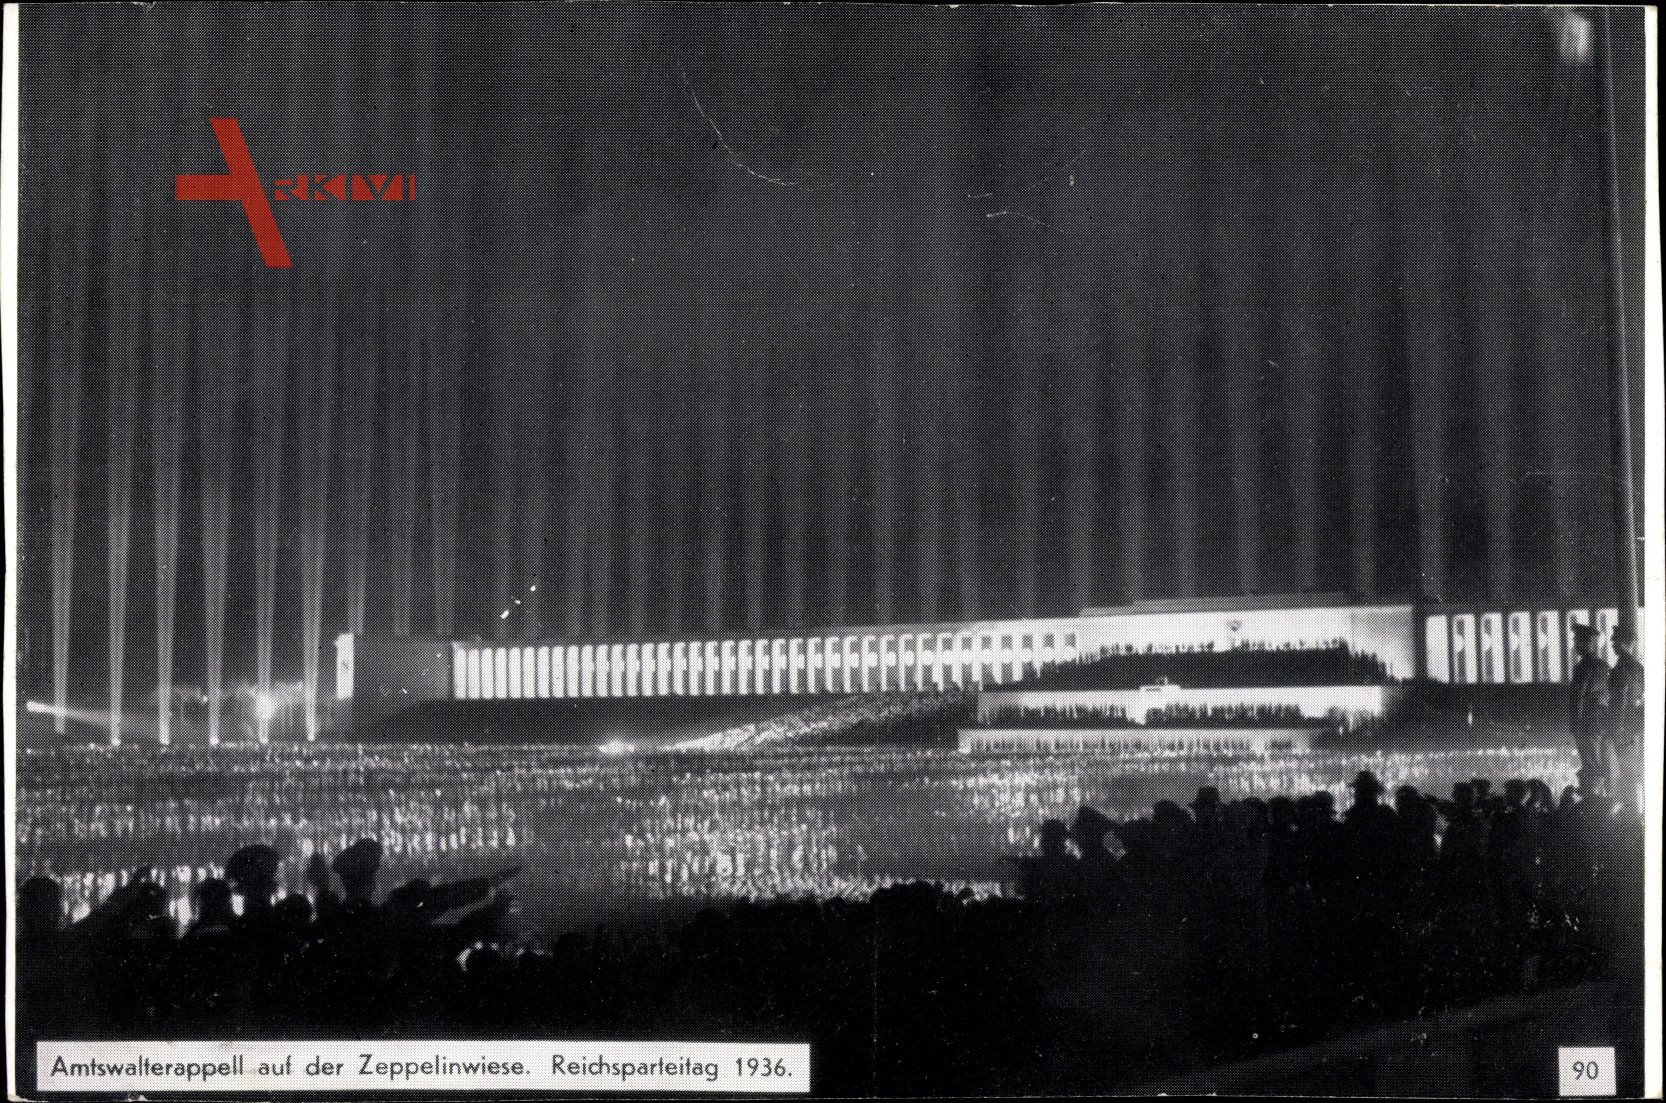 Nürnberg, Reichsparteitag 1936, Amtswalterappell auf der Zeppelinwiese